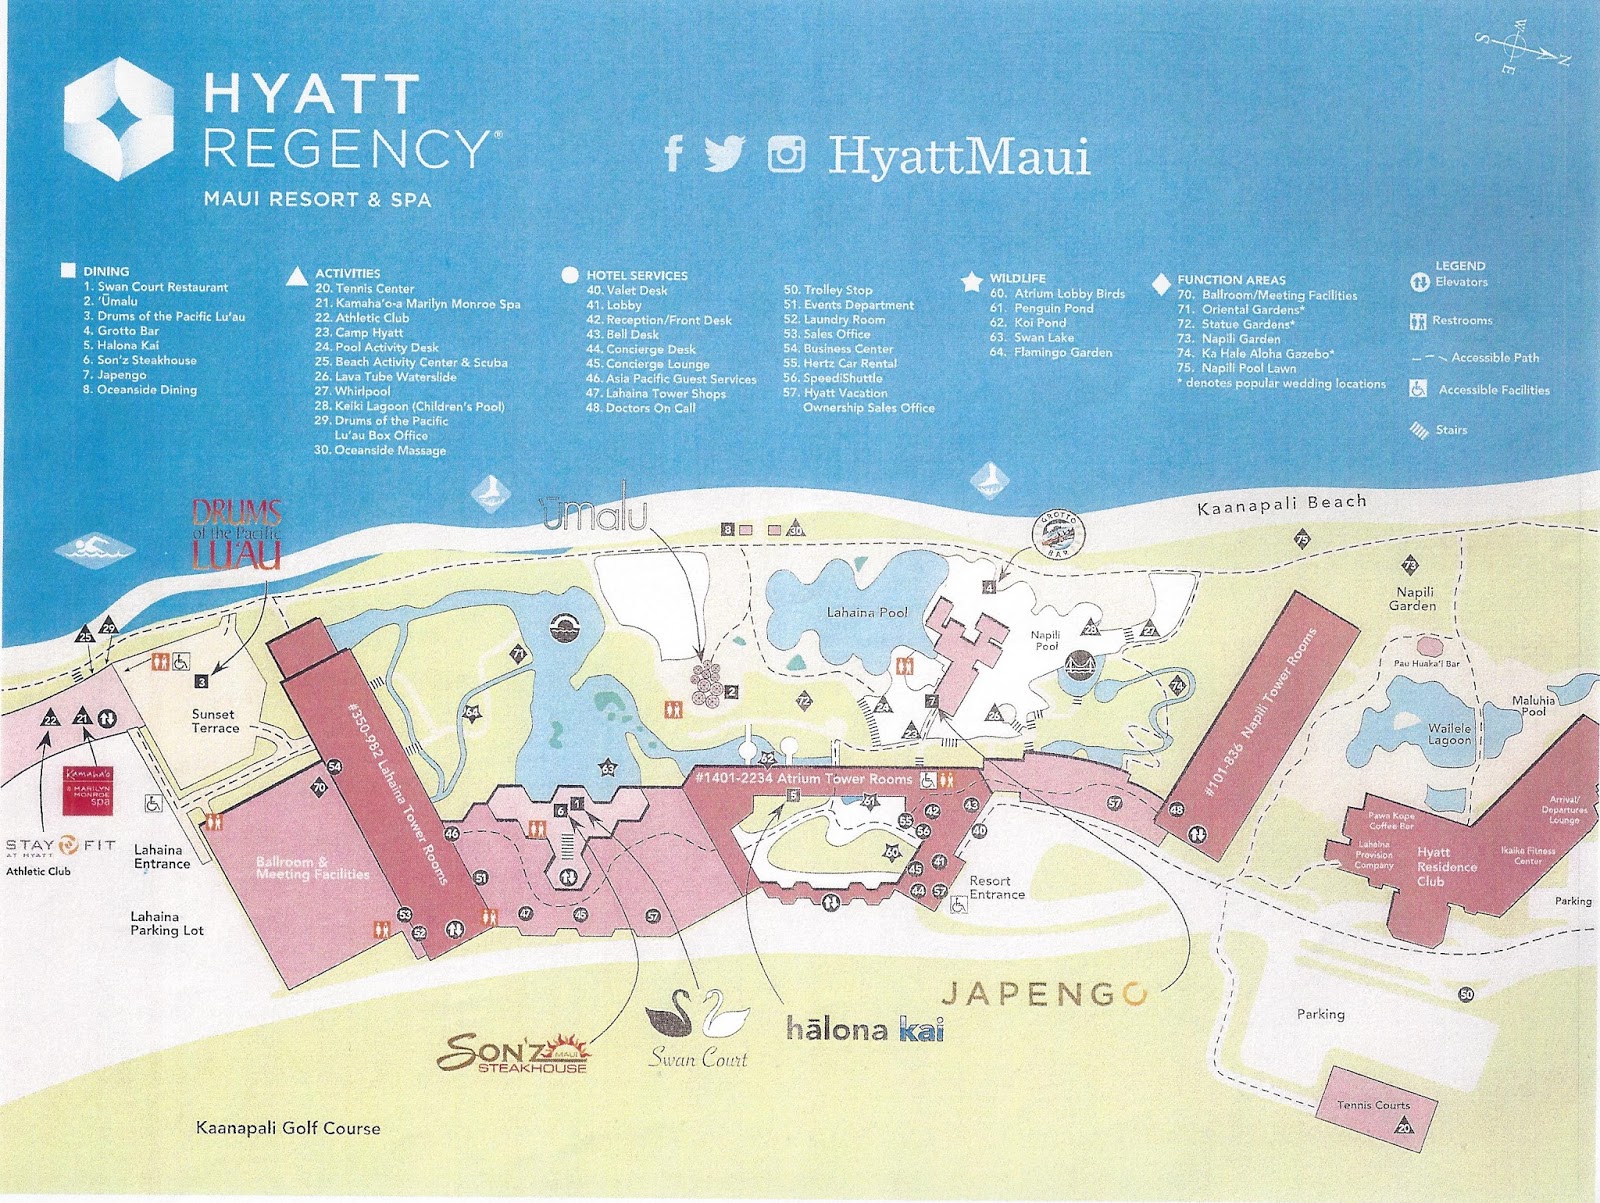 Review Hyatt Regency Maui Resort and Spa